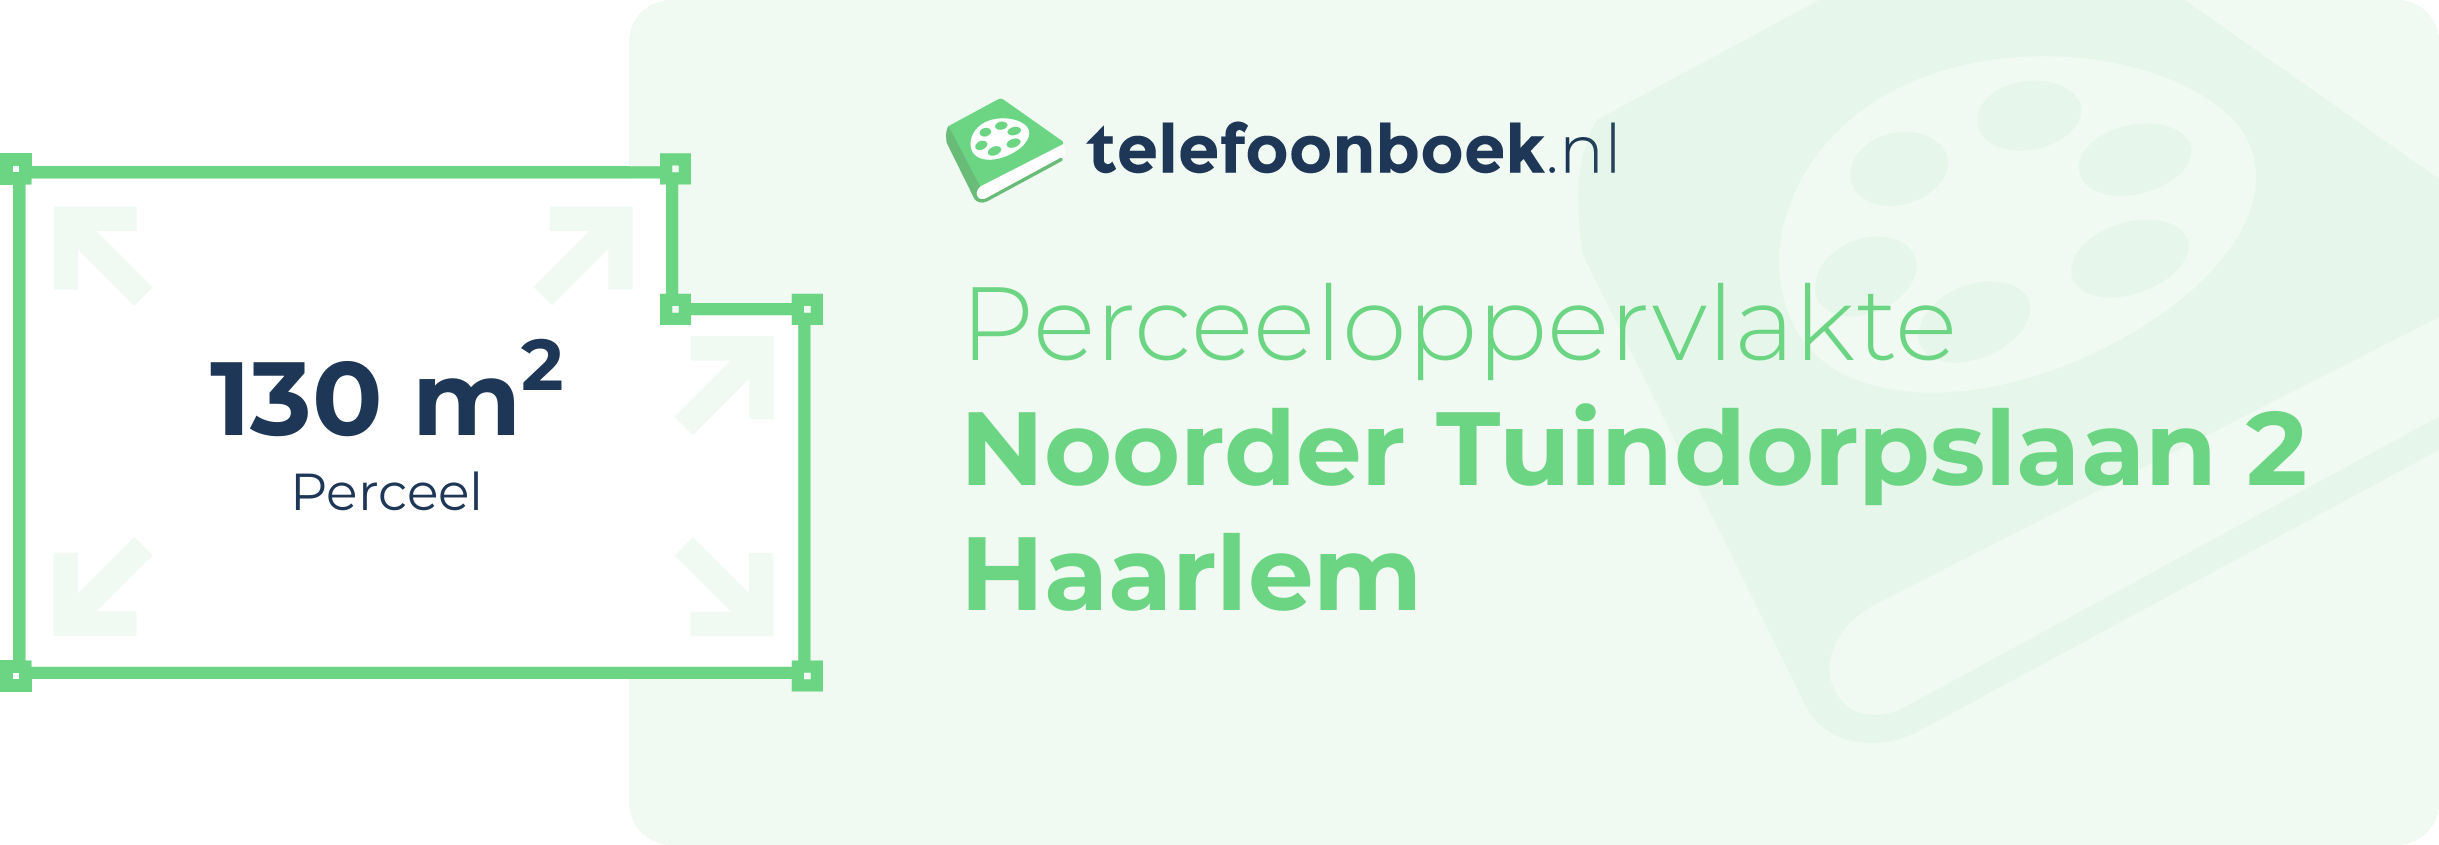 Perceeloppervlakte Noorder Tuindorpslaan 2 Haarlem